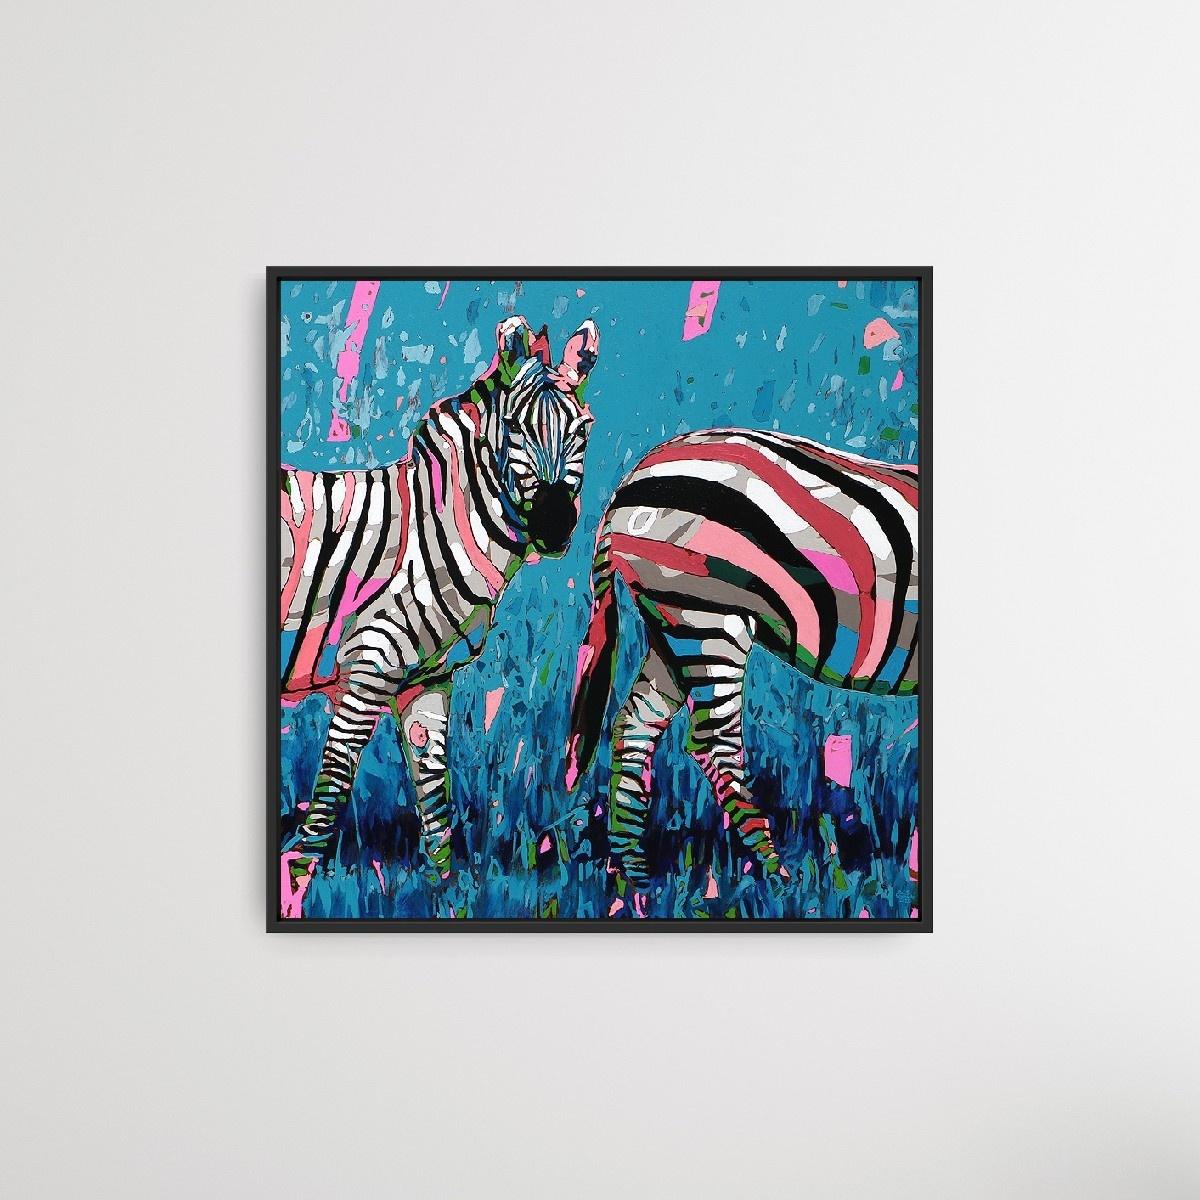 Zebras - Peinture à l'huile figurative contemporaine, Pop art, animaux, artiste polonais - Painting de Rafał Gadowski